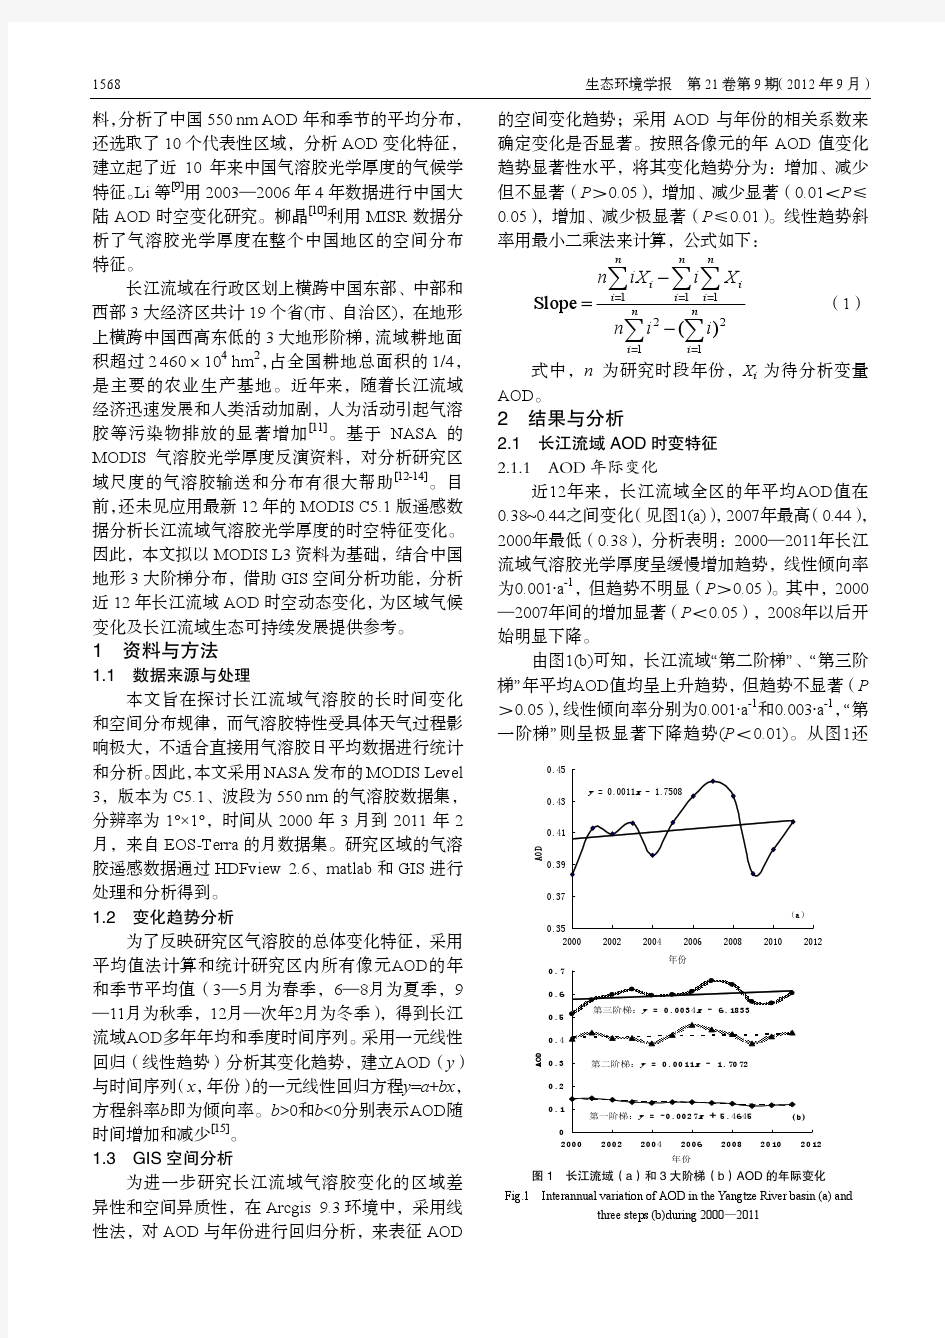 近年来长江流域气溶胶光学厚度时空变化特征分析